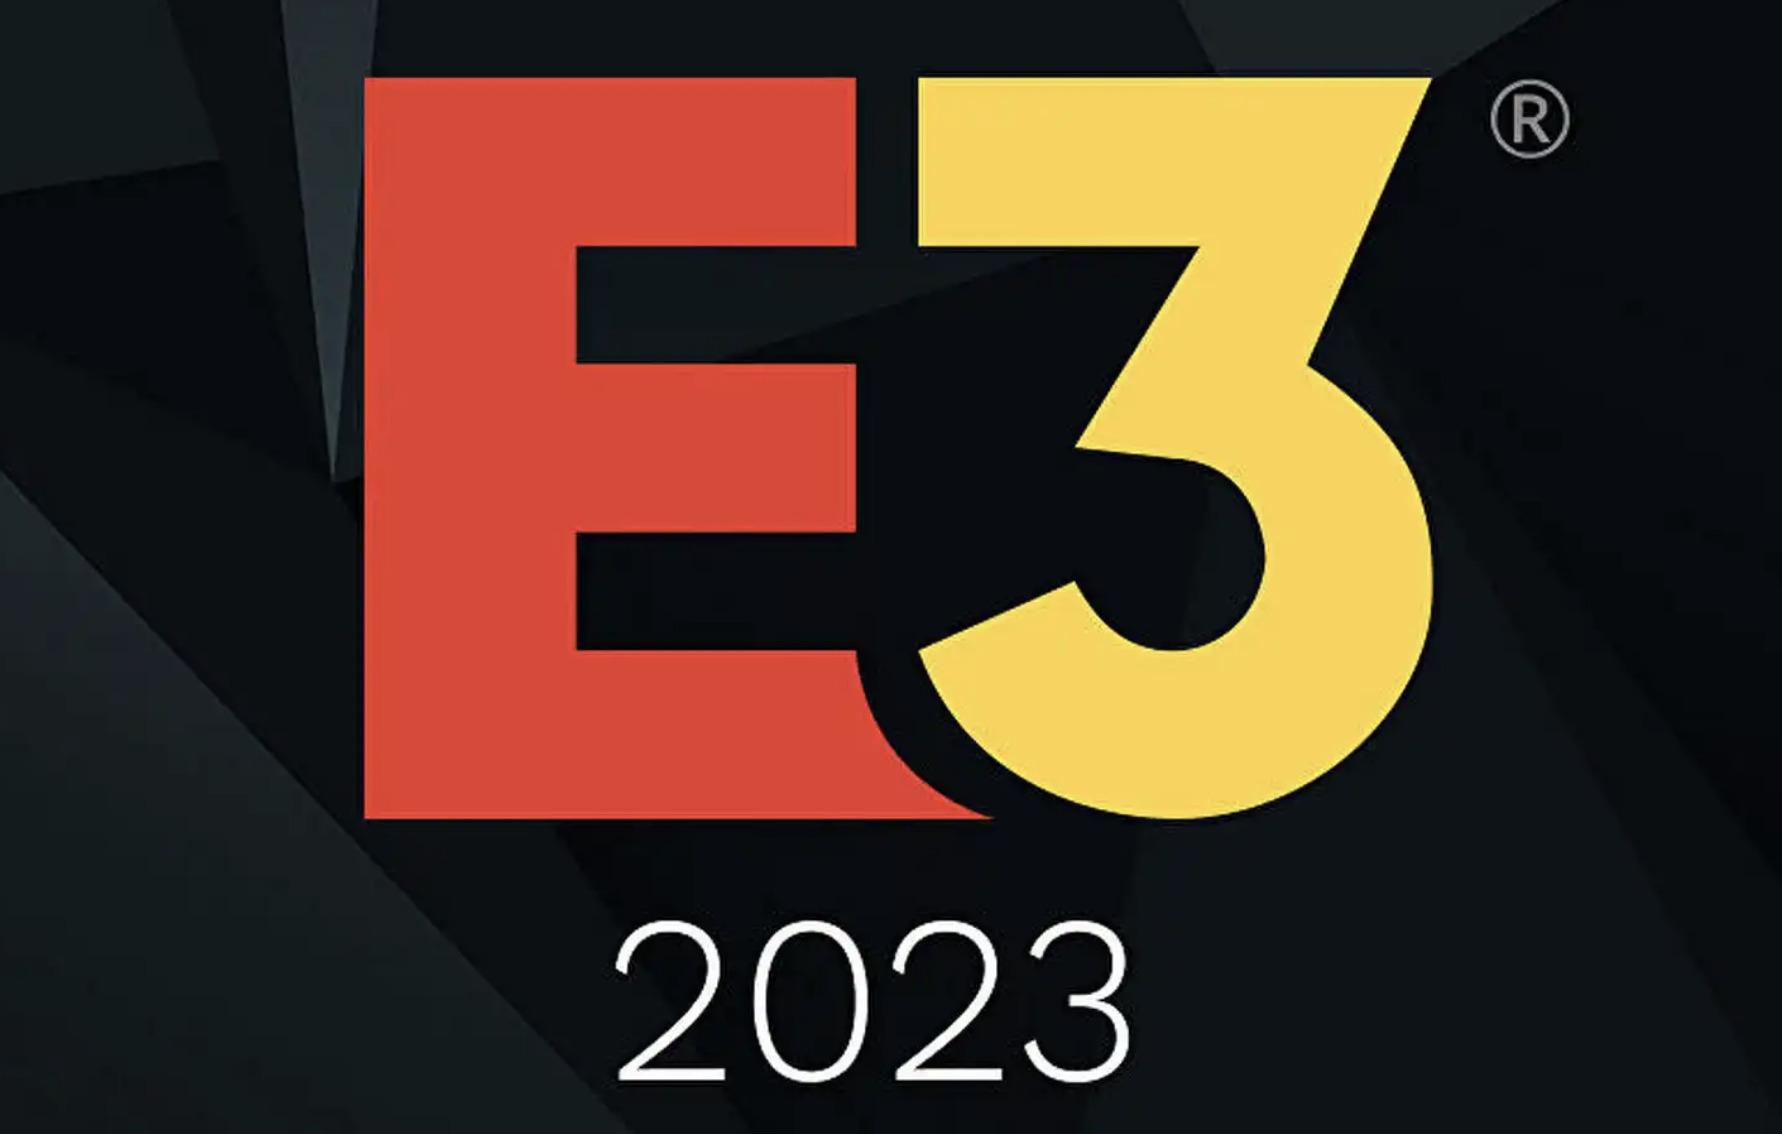 Cancelado el E3 en 2023: no tuvo el apoyo suficiente y es la crónica de una muerte anunciada